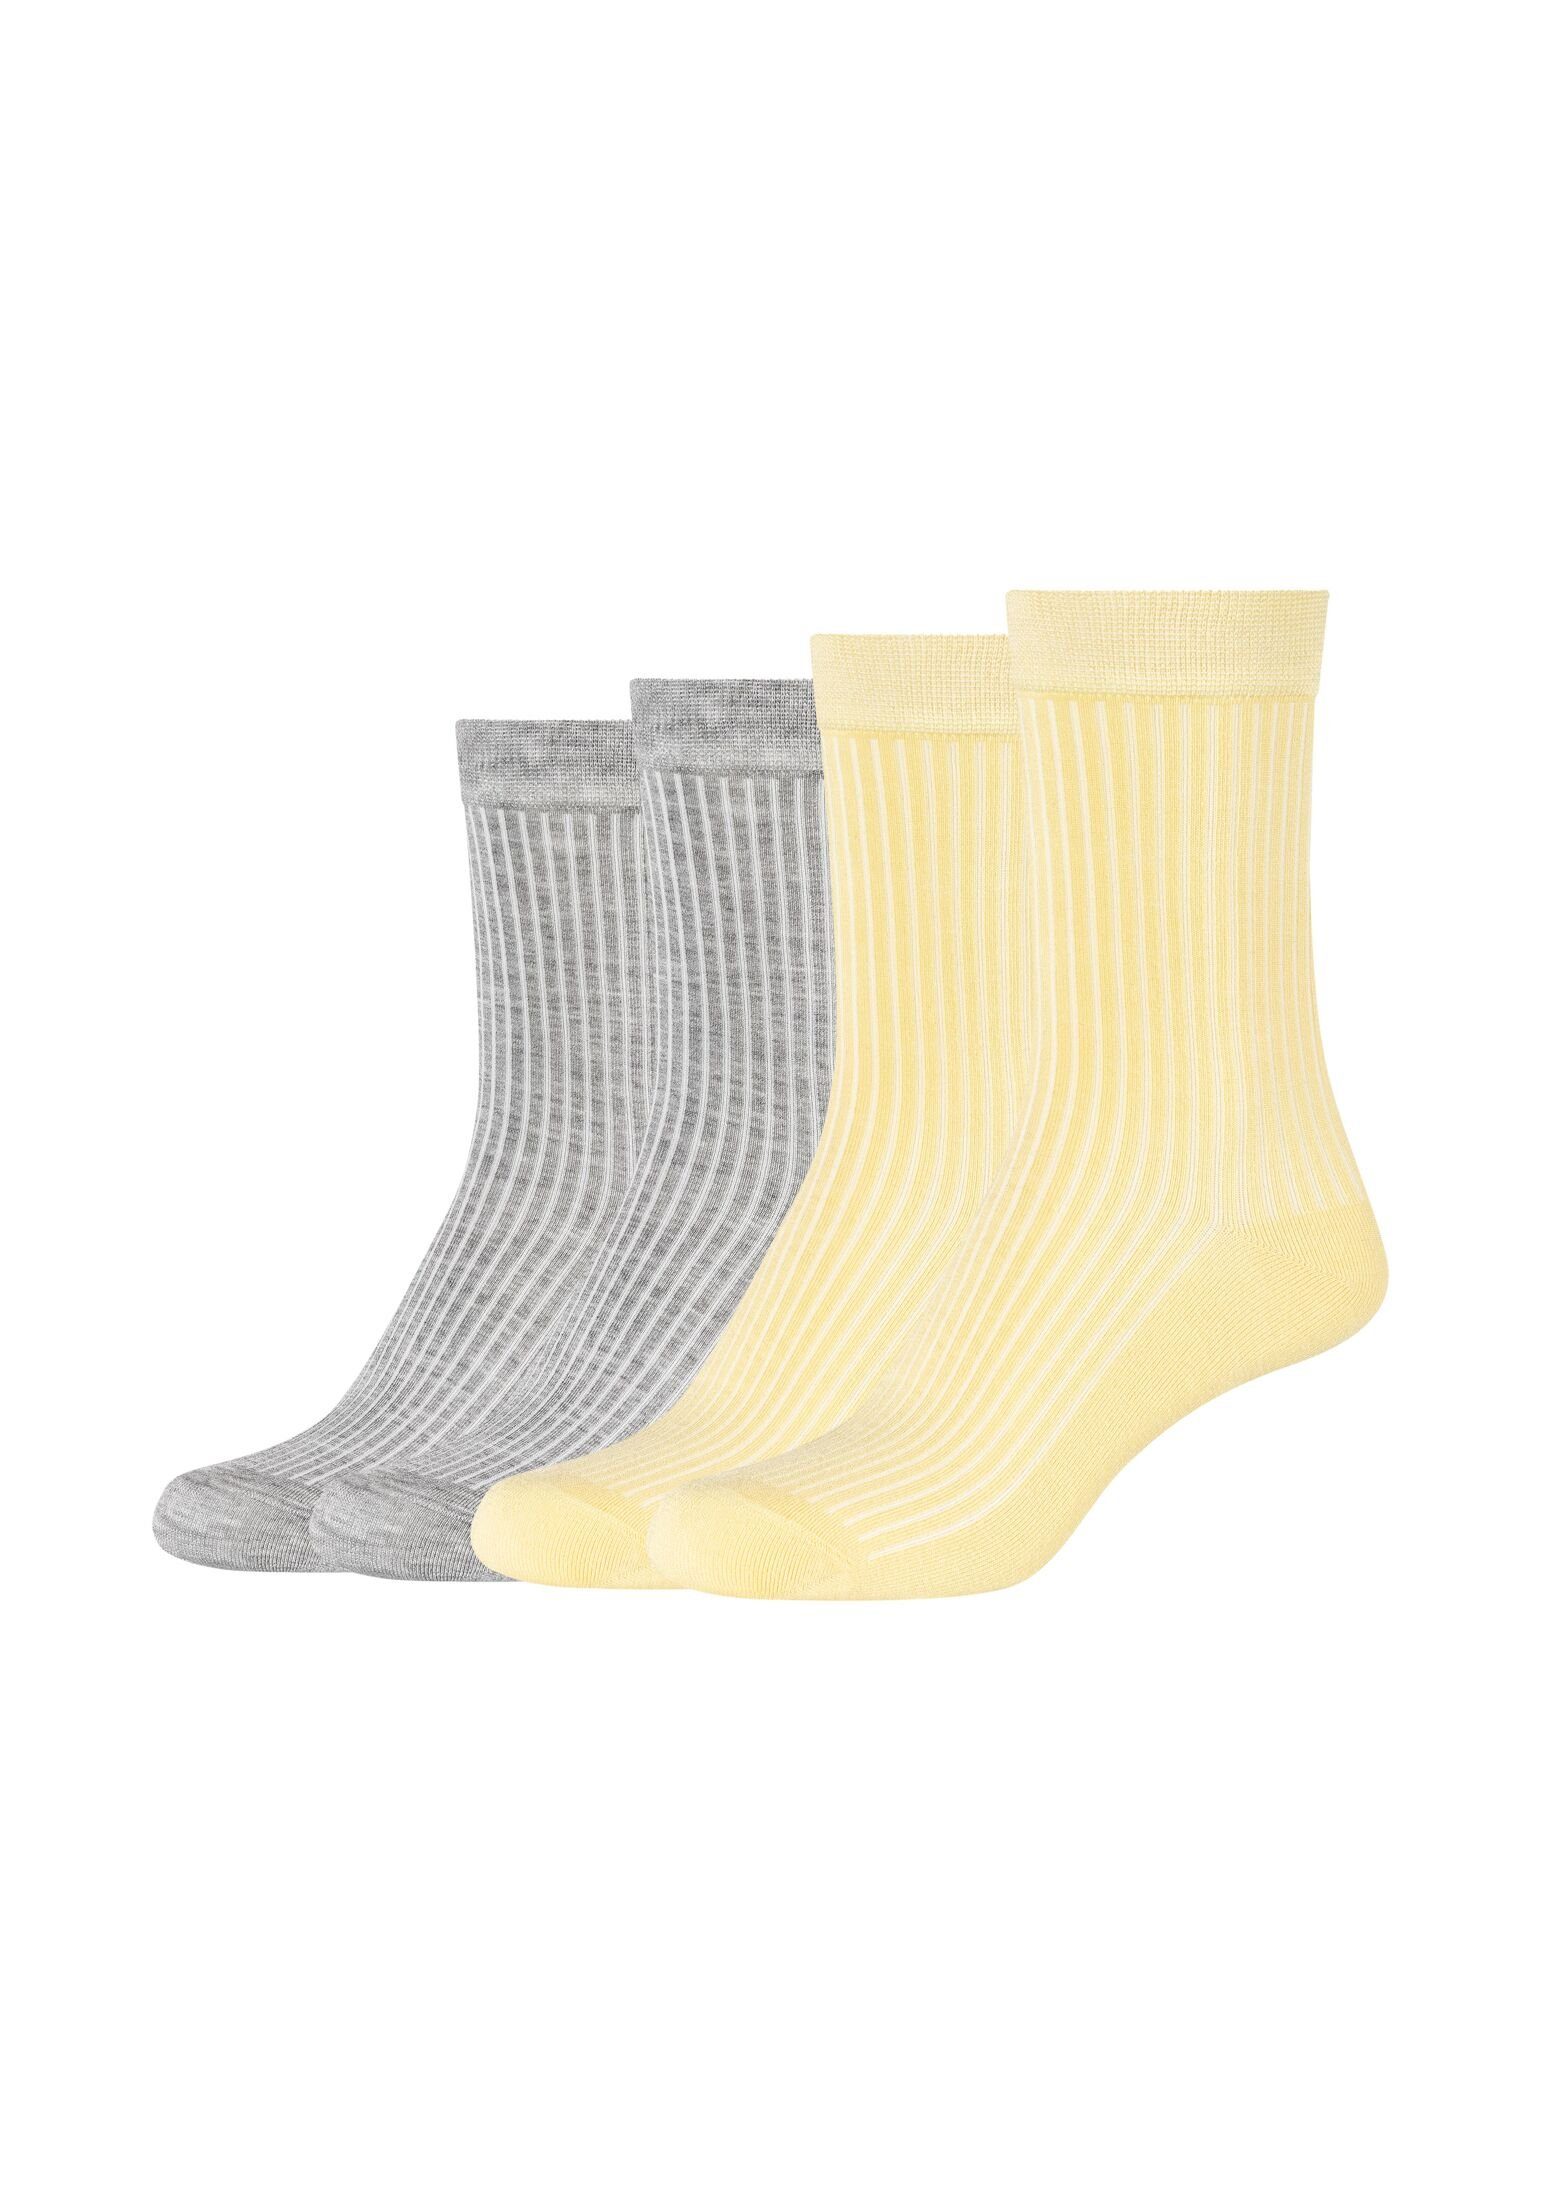 Camano Socken Socken 4er Pack, Keine Druckstellen: handgekettelte  Zehennähte und Komfort